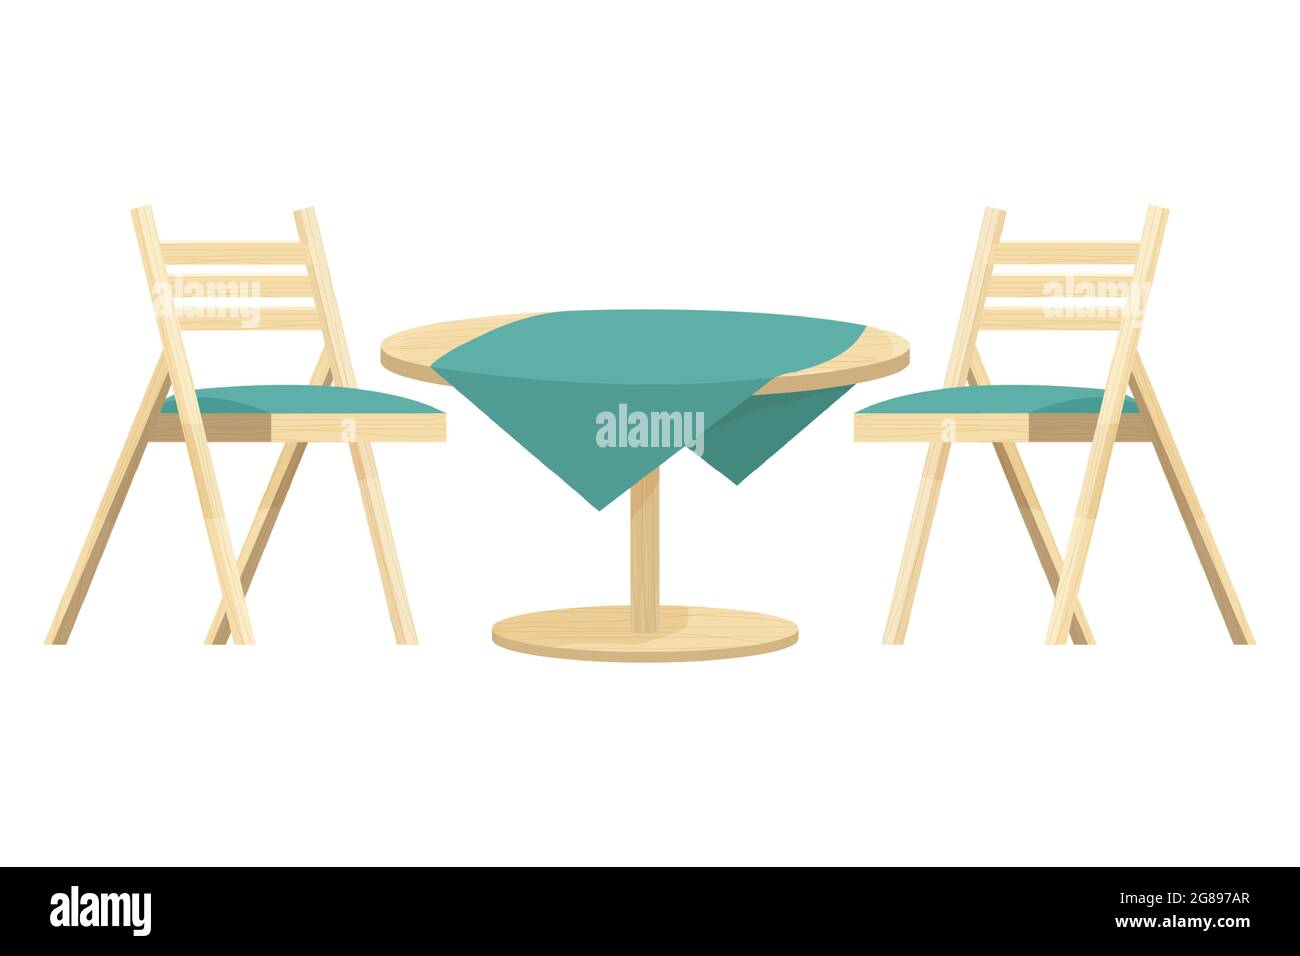 Table ronde en bois avec nappe et deux chaises texturées de style dessin animé isolées sur fond blanc. Jardin, meubles d'extérieur, décoration. Illustration vectorielle Illustration de Vecteur